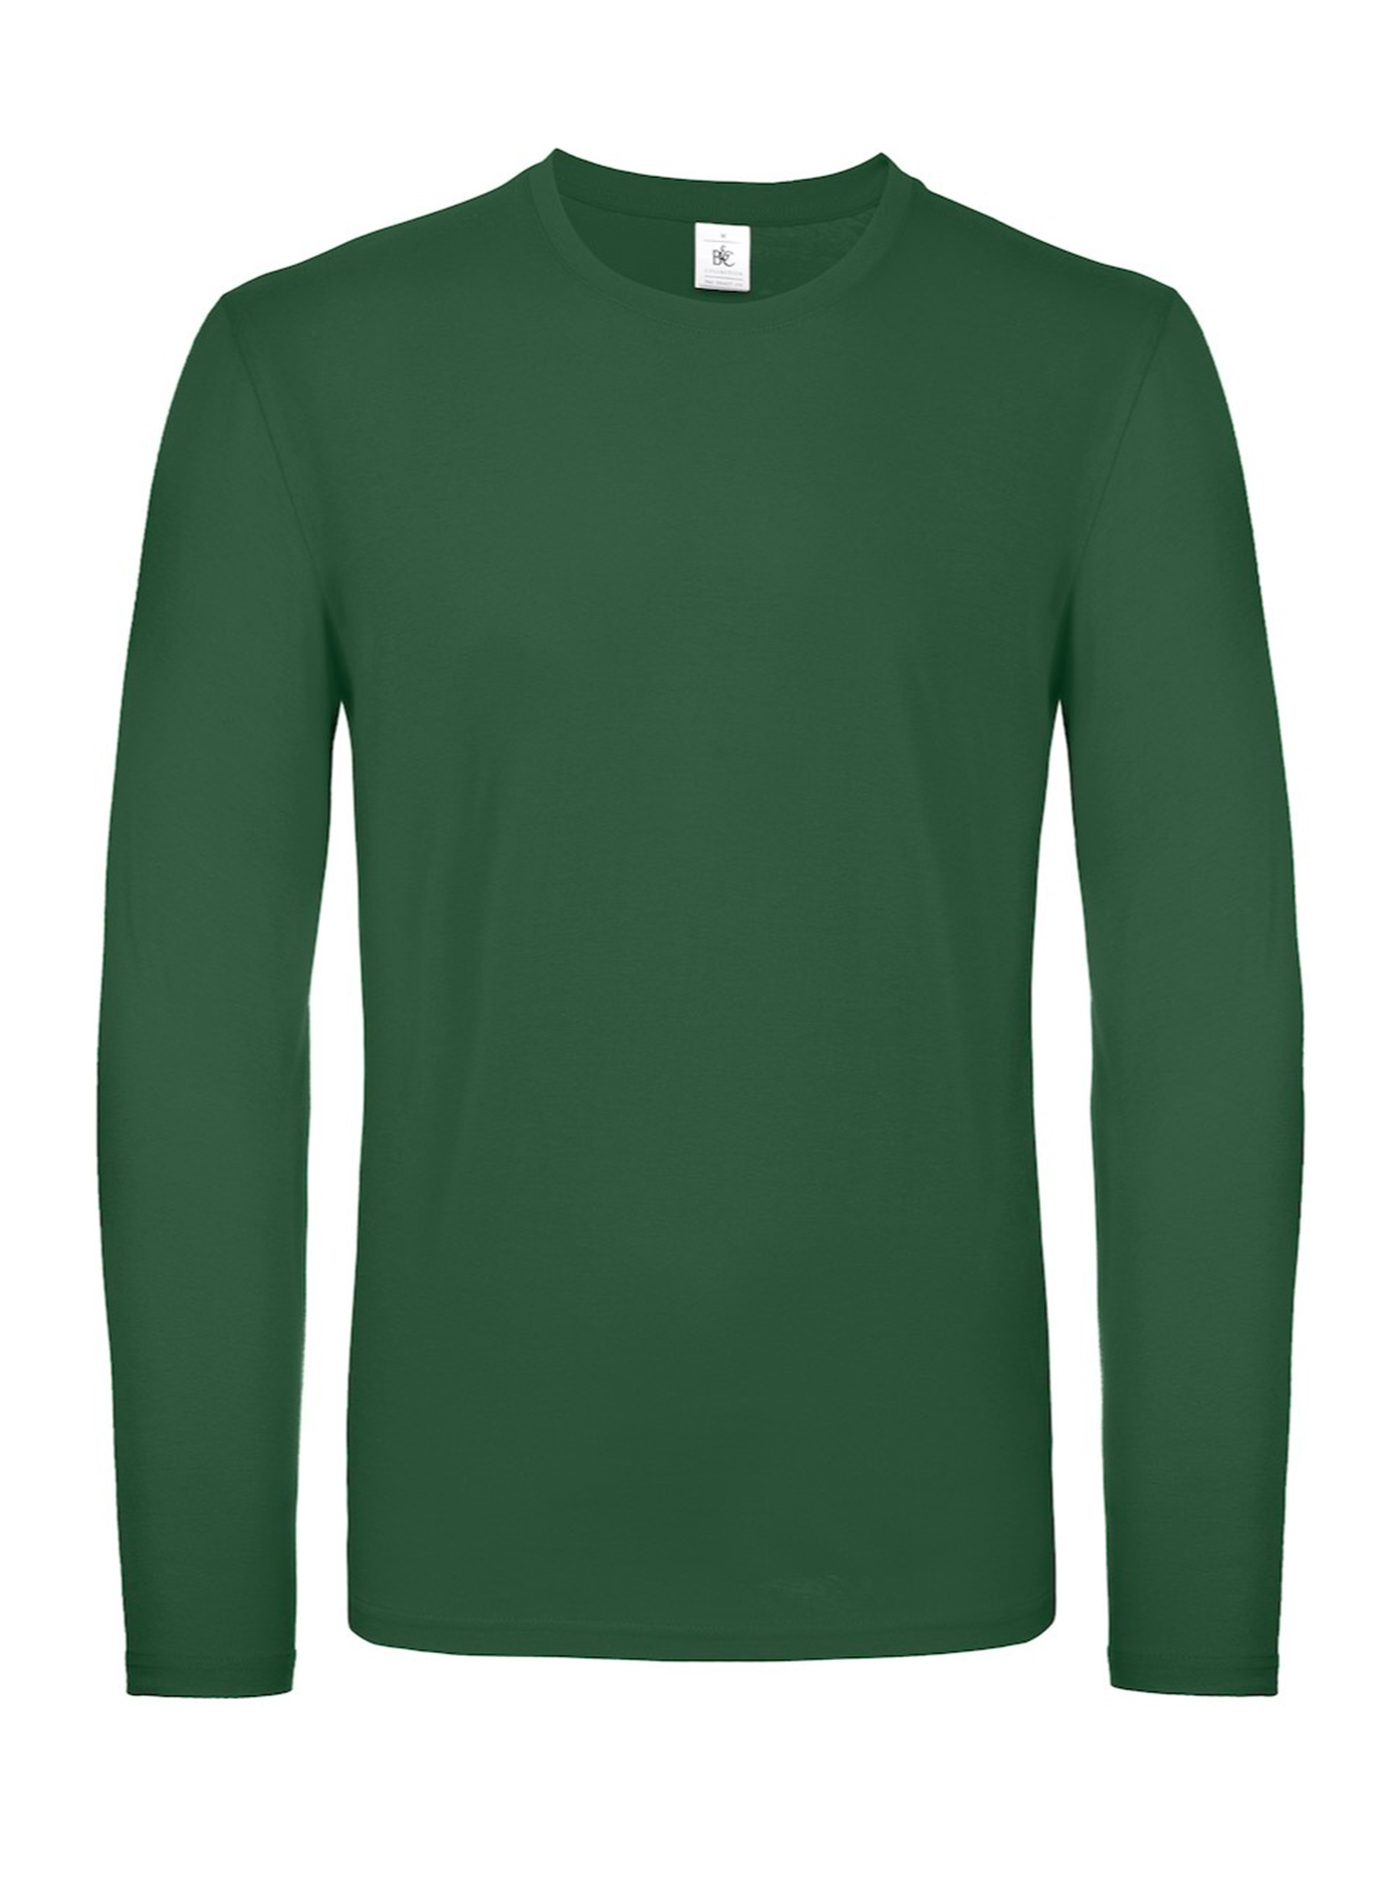 Tričko s dlouhým rukávem B&C - Lahvově zelená XL